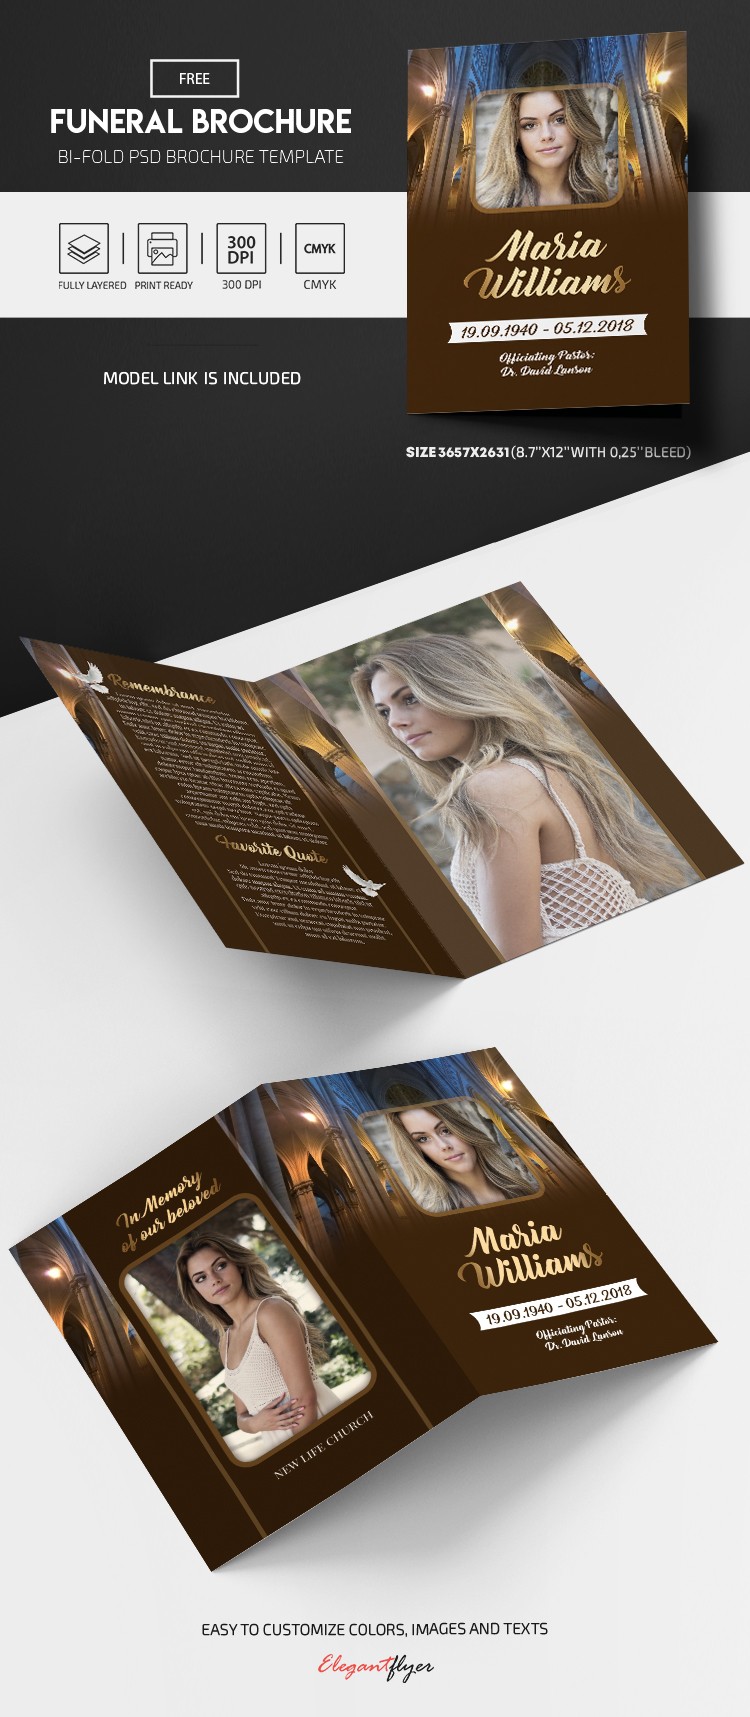 Funeral Bi-Fold Brochure by ElegantFlyer